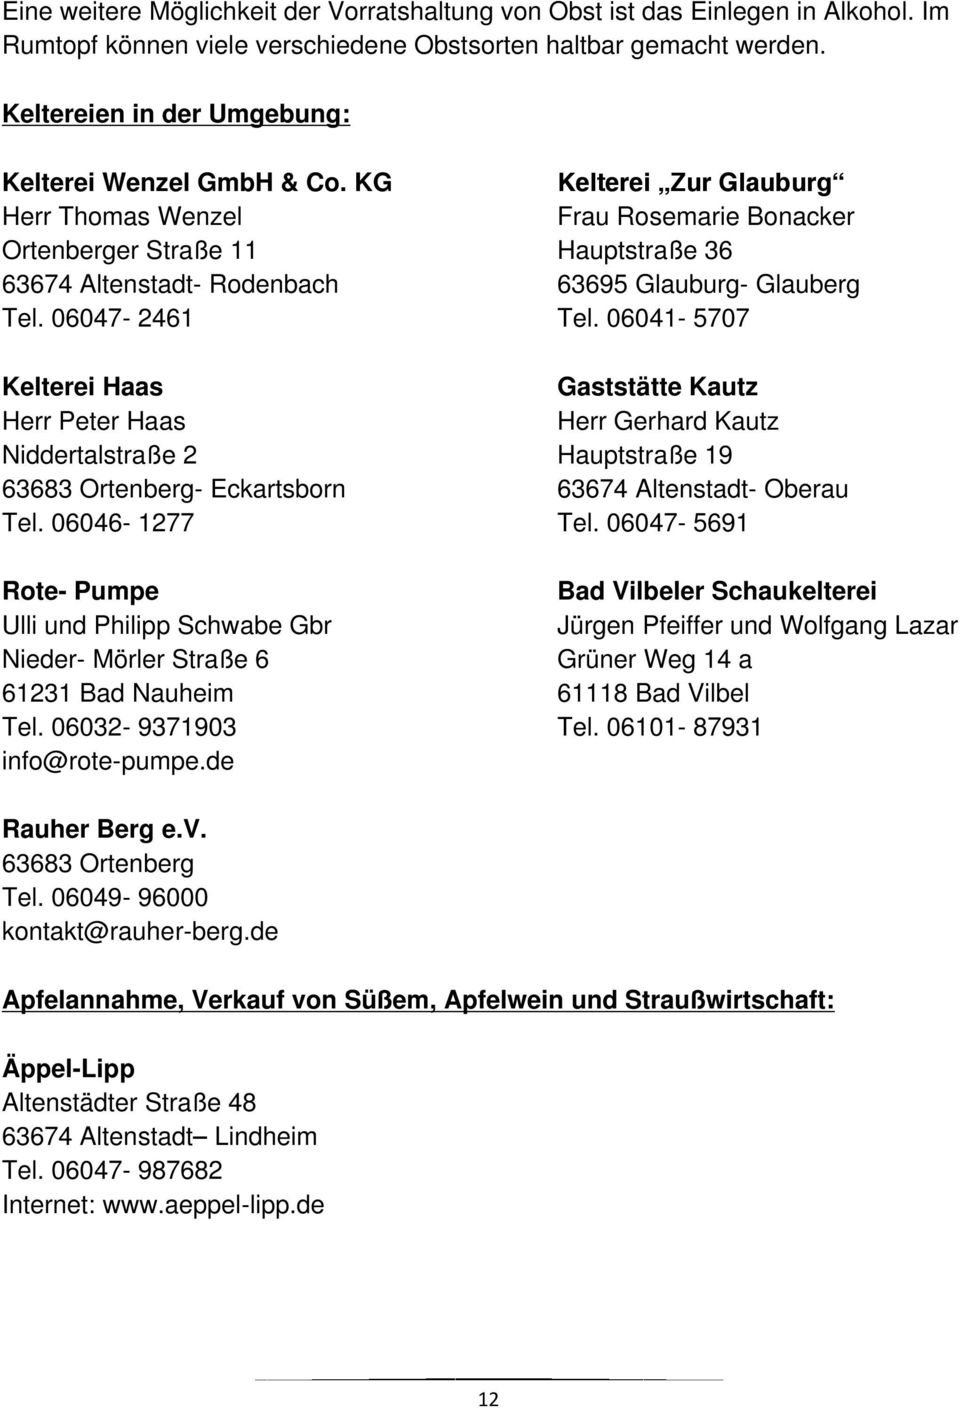 KG Kelterei Zur Glauburg Herr Thomas Wenzel Frau Rosemarie Bonacker Ortenberger Straße 11 Hauptstraße 36 63674 Altenstadt- Rodenbach 63695 Glauburg- Glauberg Tel. 06047-2461 Tel.